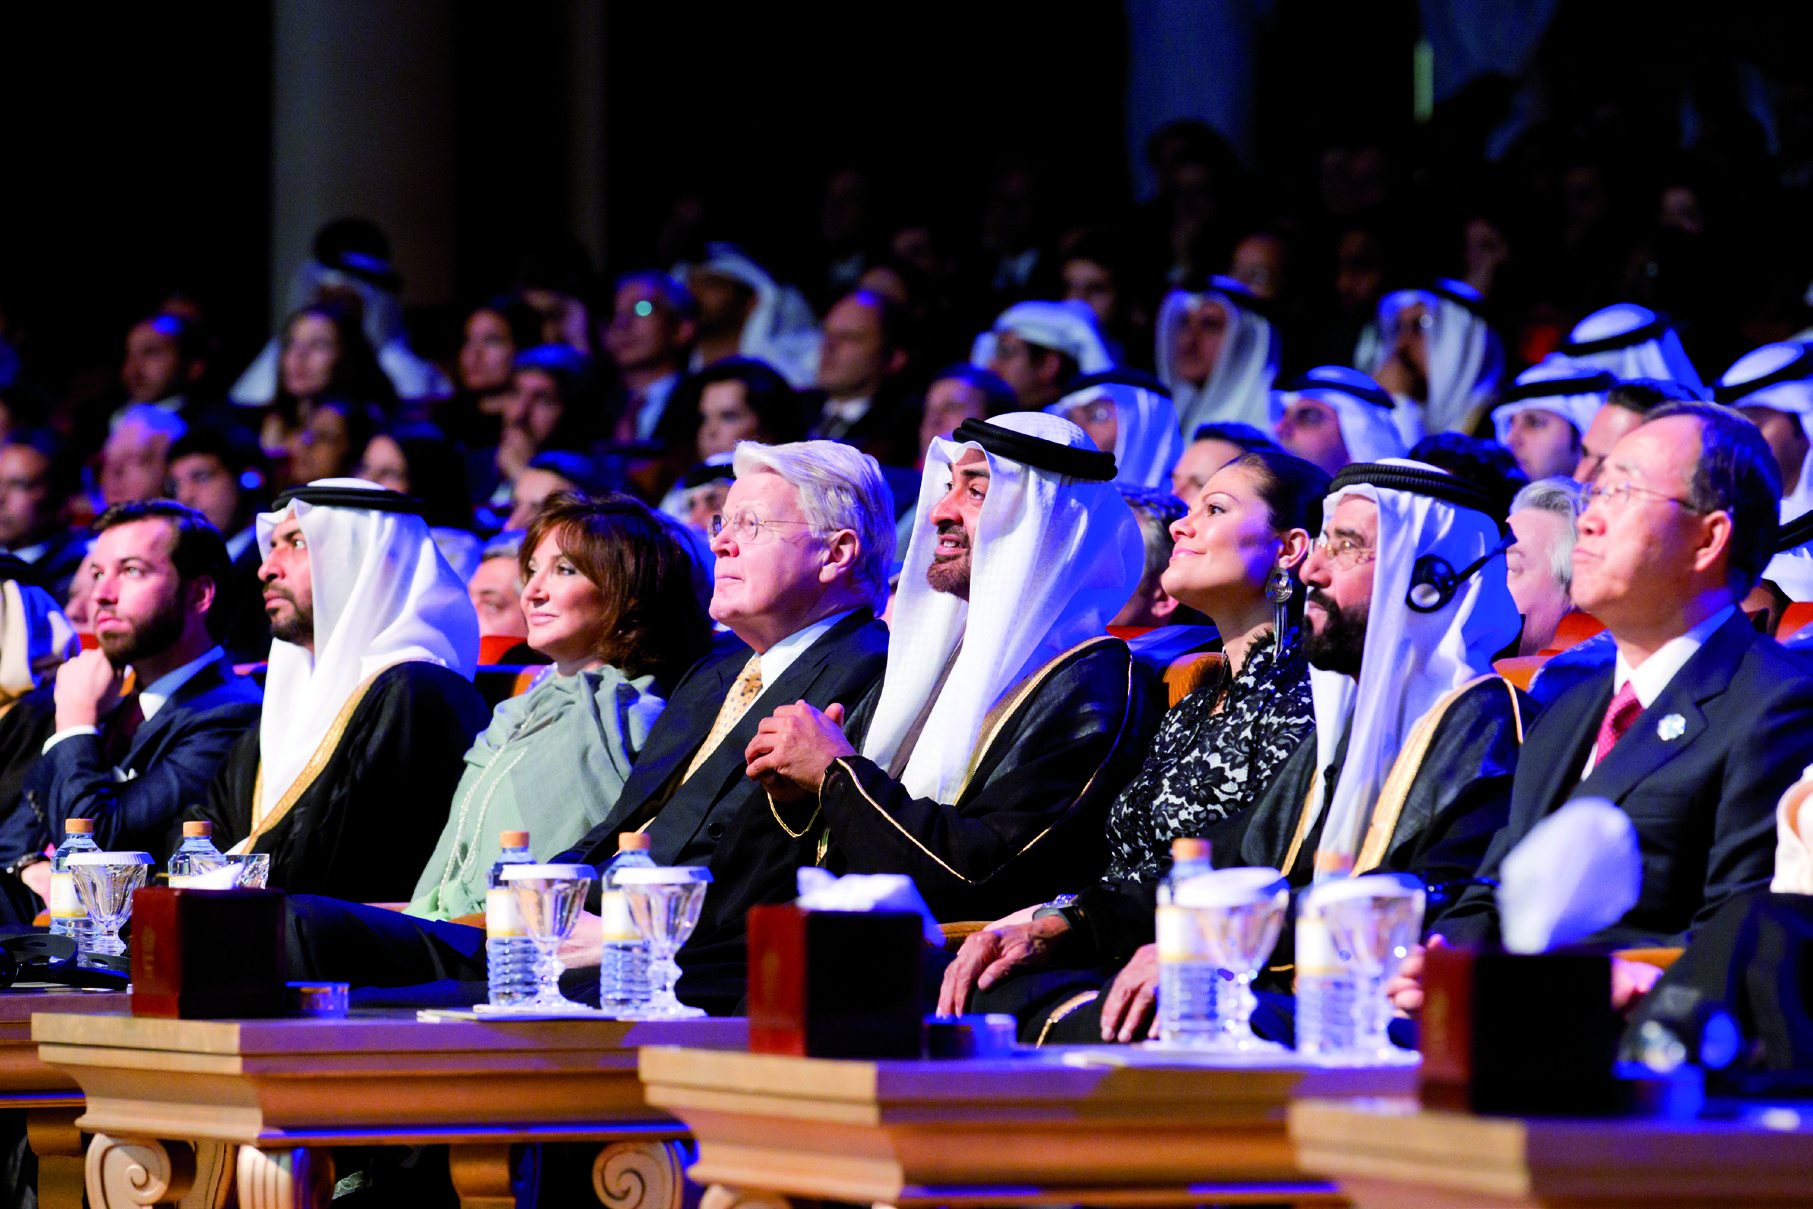 Photo by: Ryan Carter, Philip Cheung / Crown Prince Court - Abu Dhabi O prêmio Zayed Future Energy, lançado em 2008 e gerido pela Masdar, representa a visão do fundador e presidente dos Emiratos